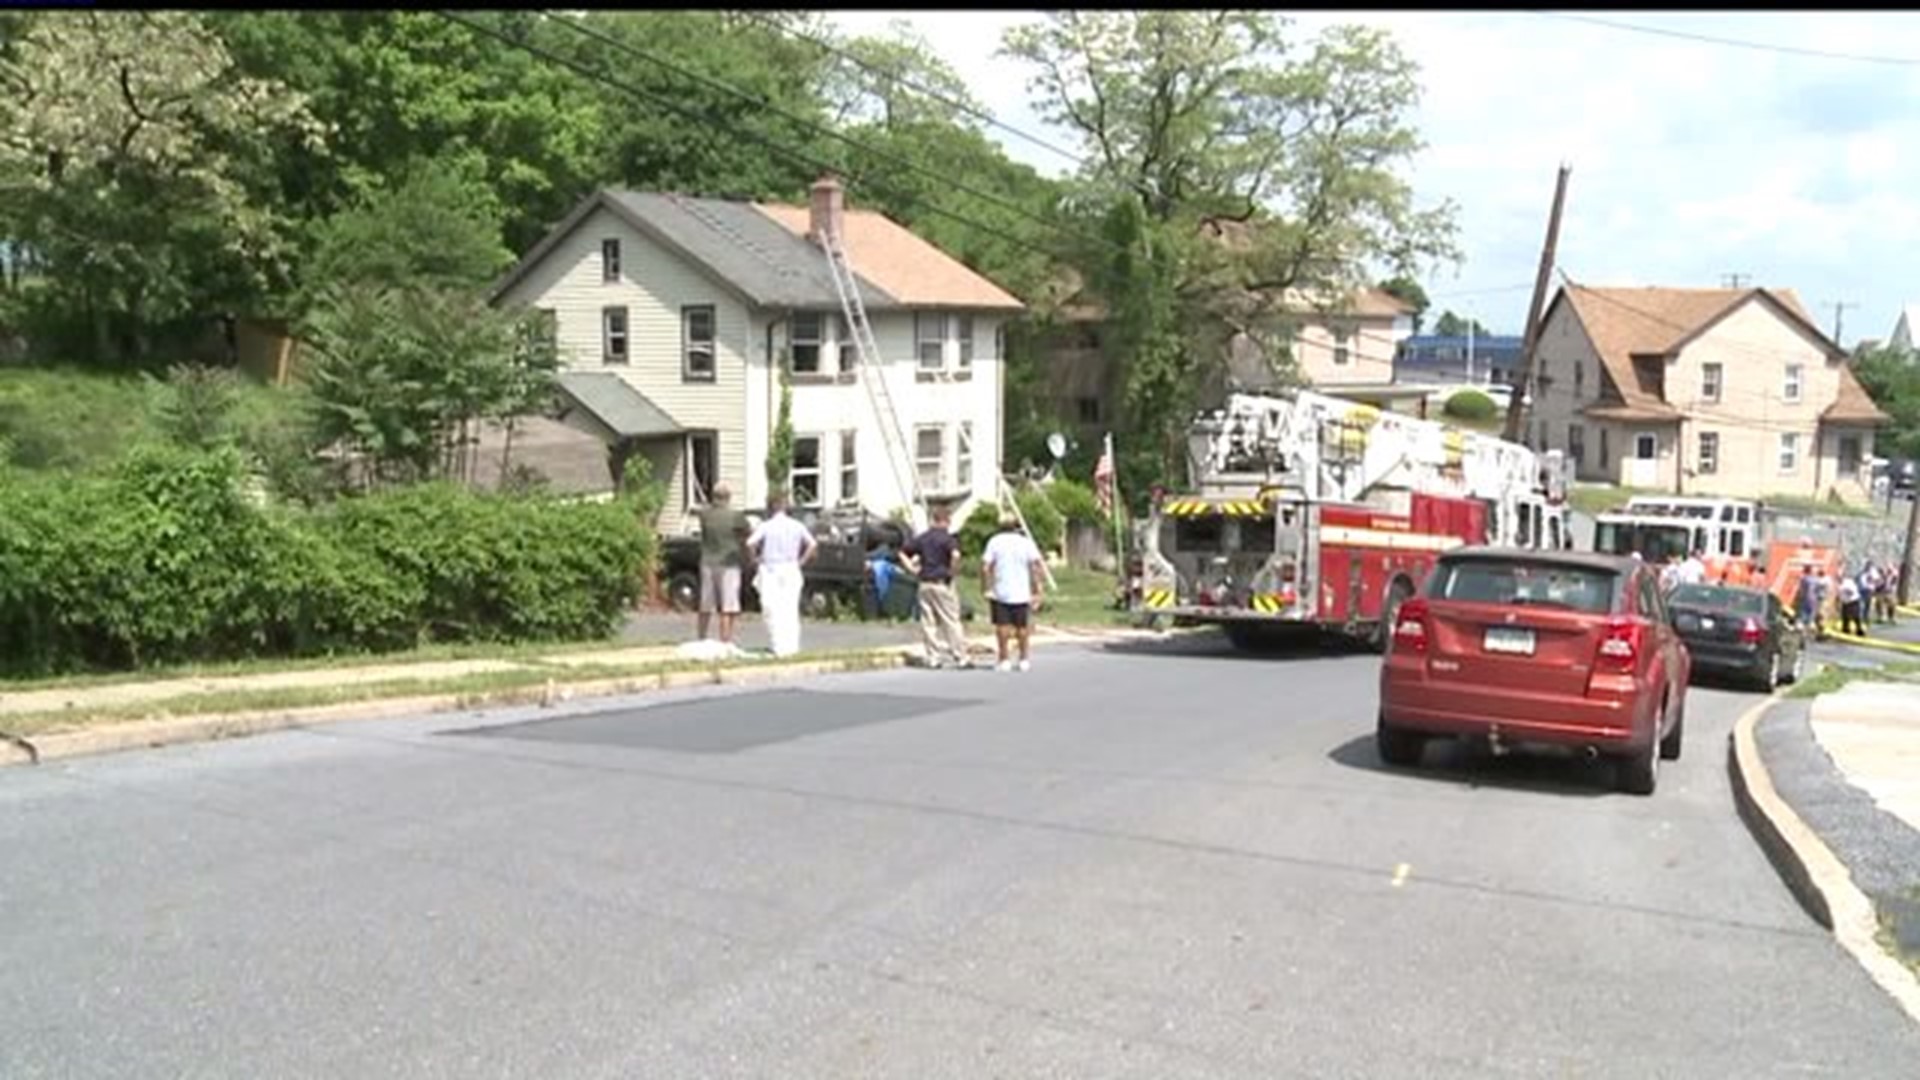 Crews respond to house fire